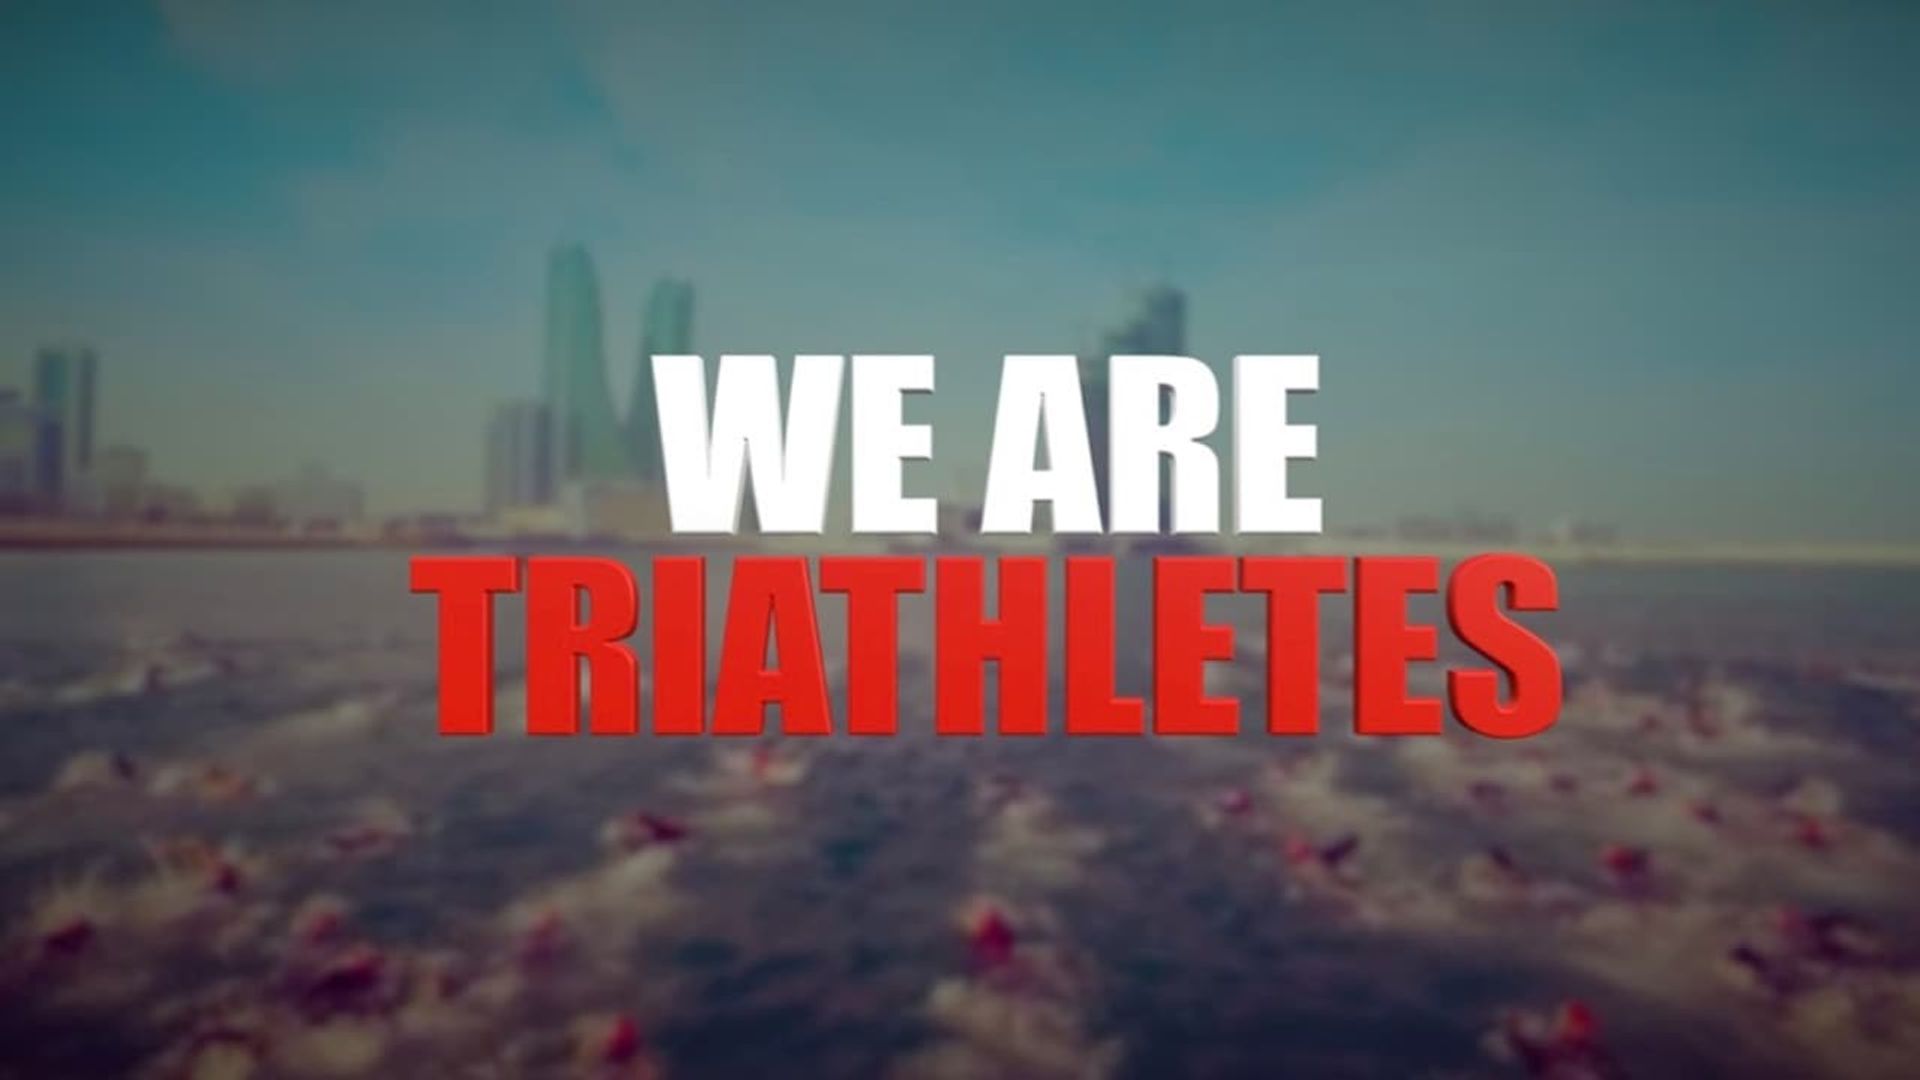 We Are Triathletes background